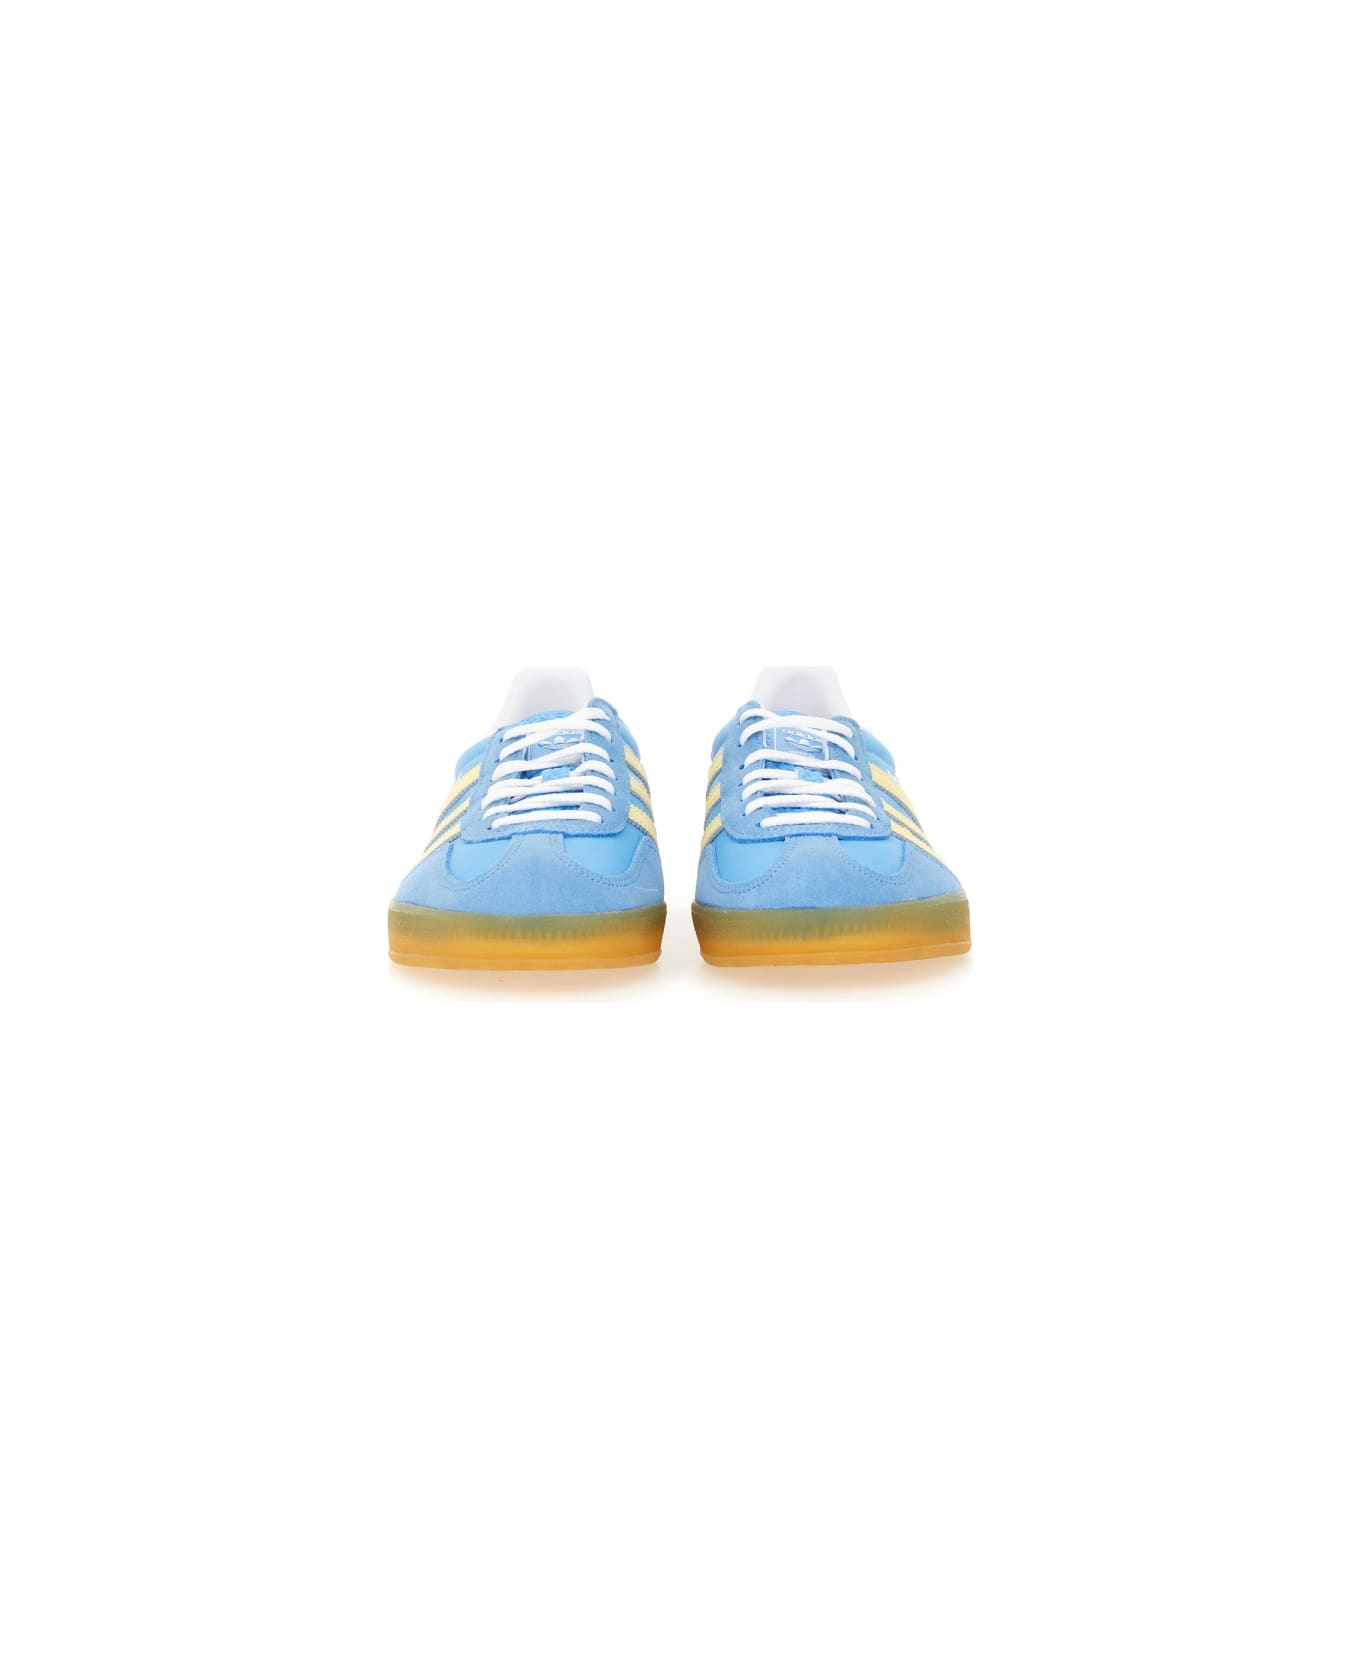 Adidas Originals "gazelle" Sneaker - BABY BLUE スニーカー